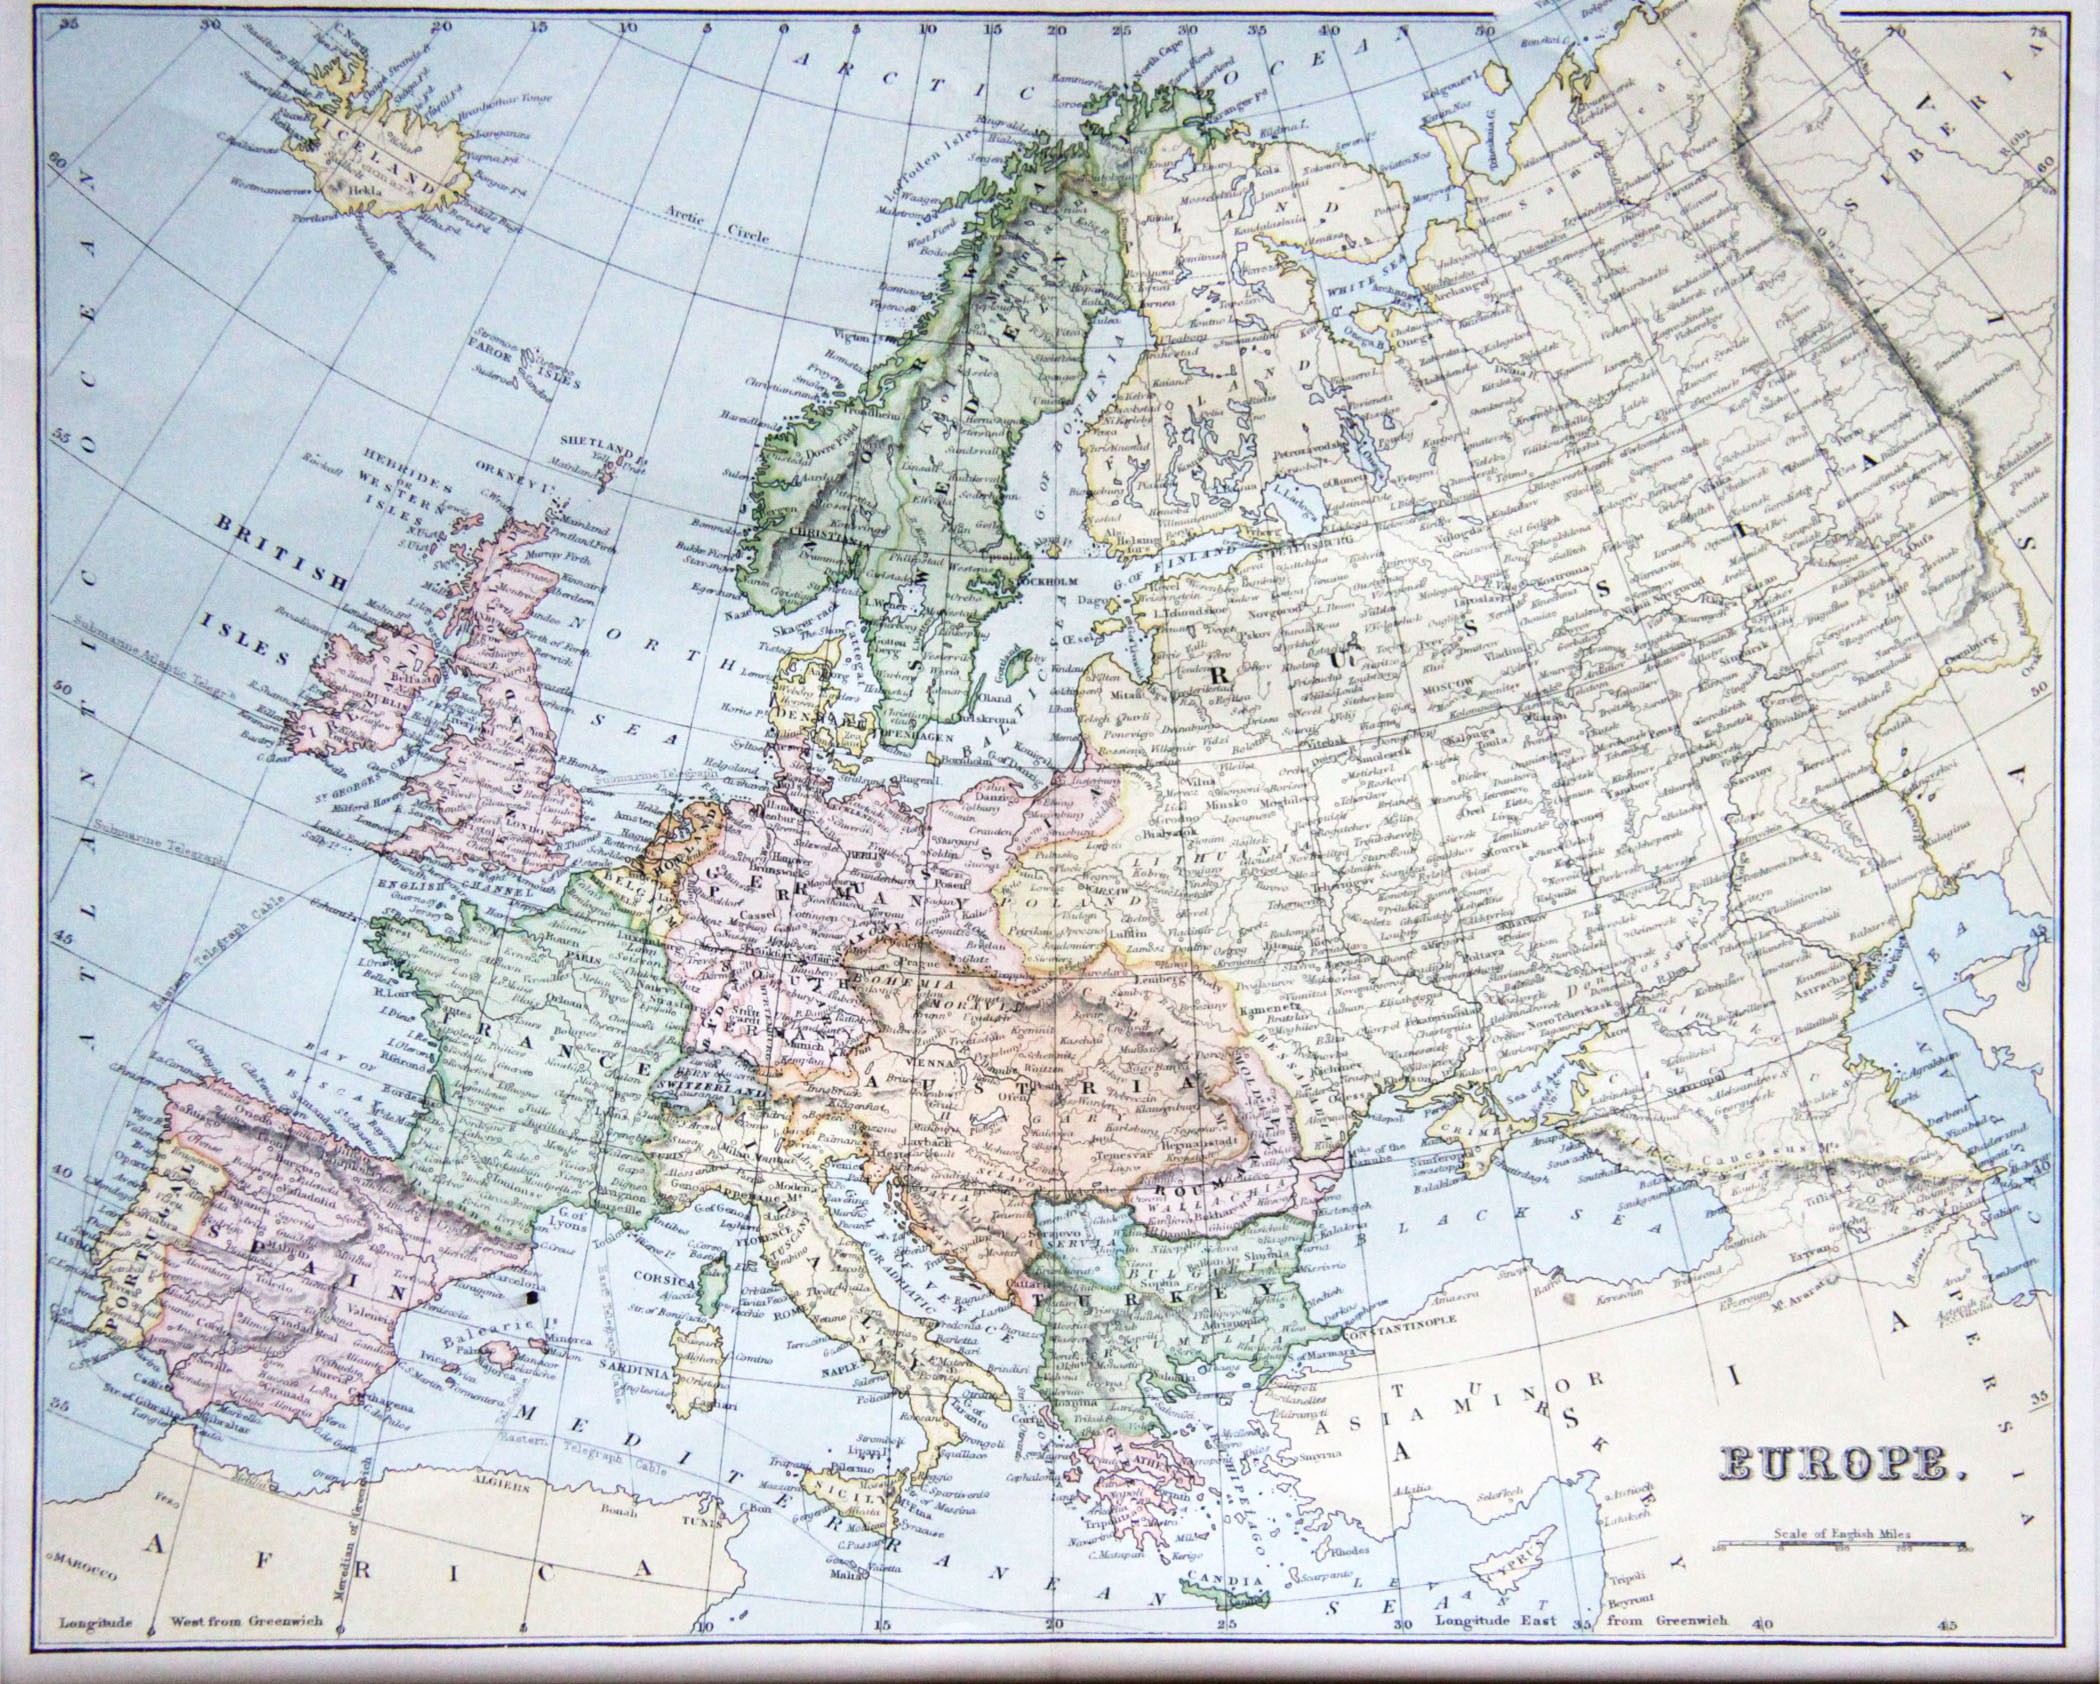 Сколько веков европы